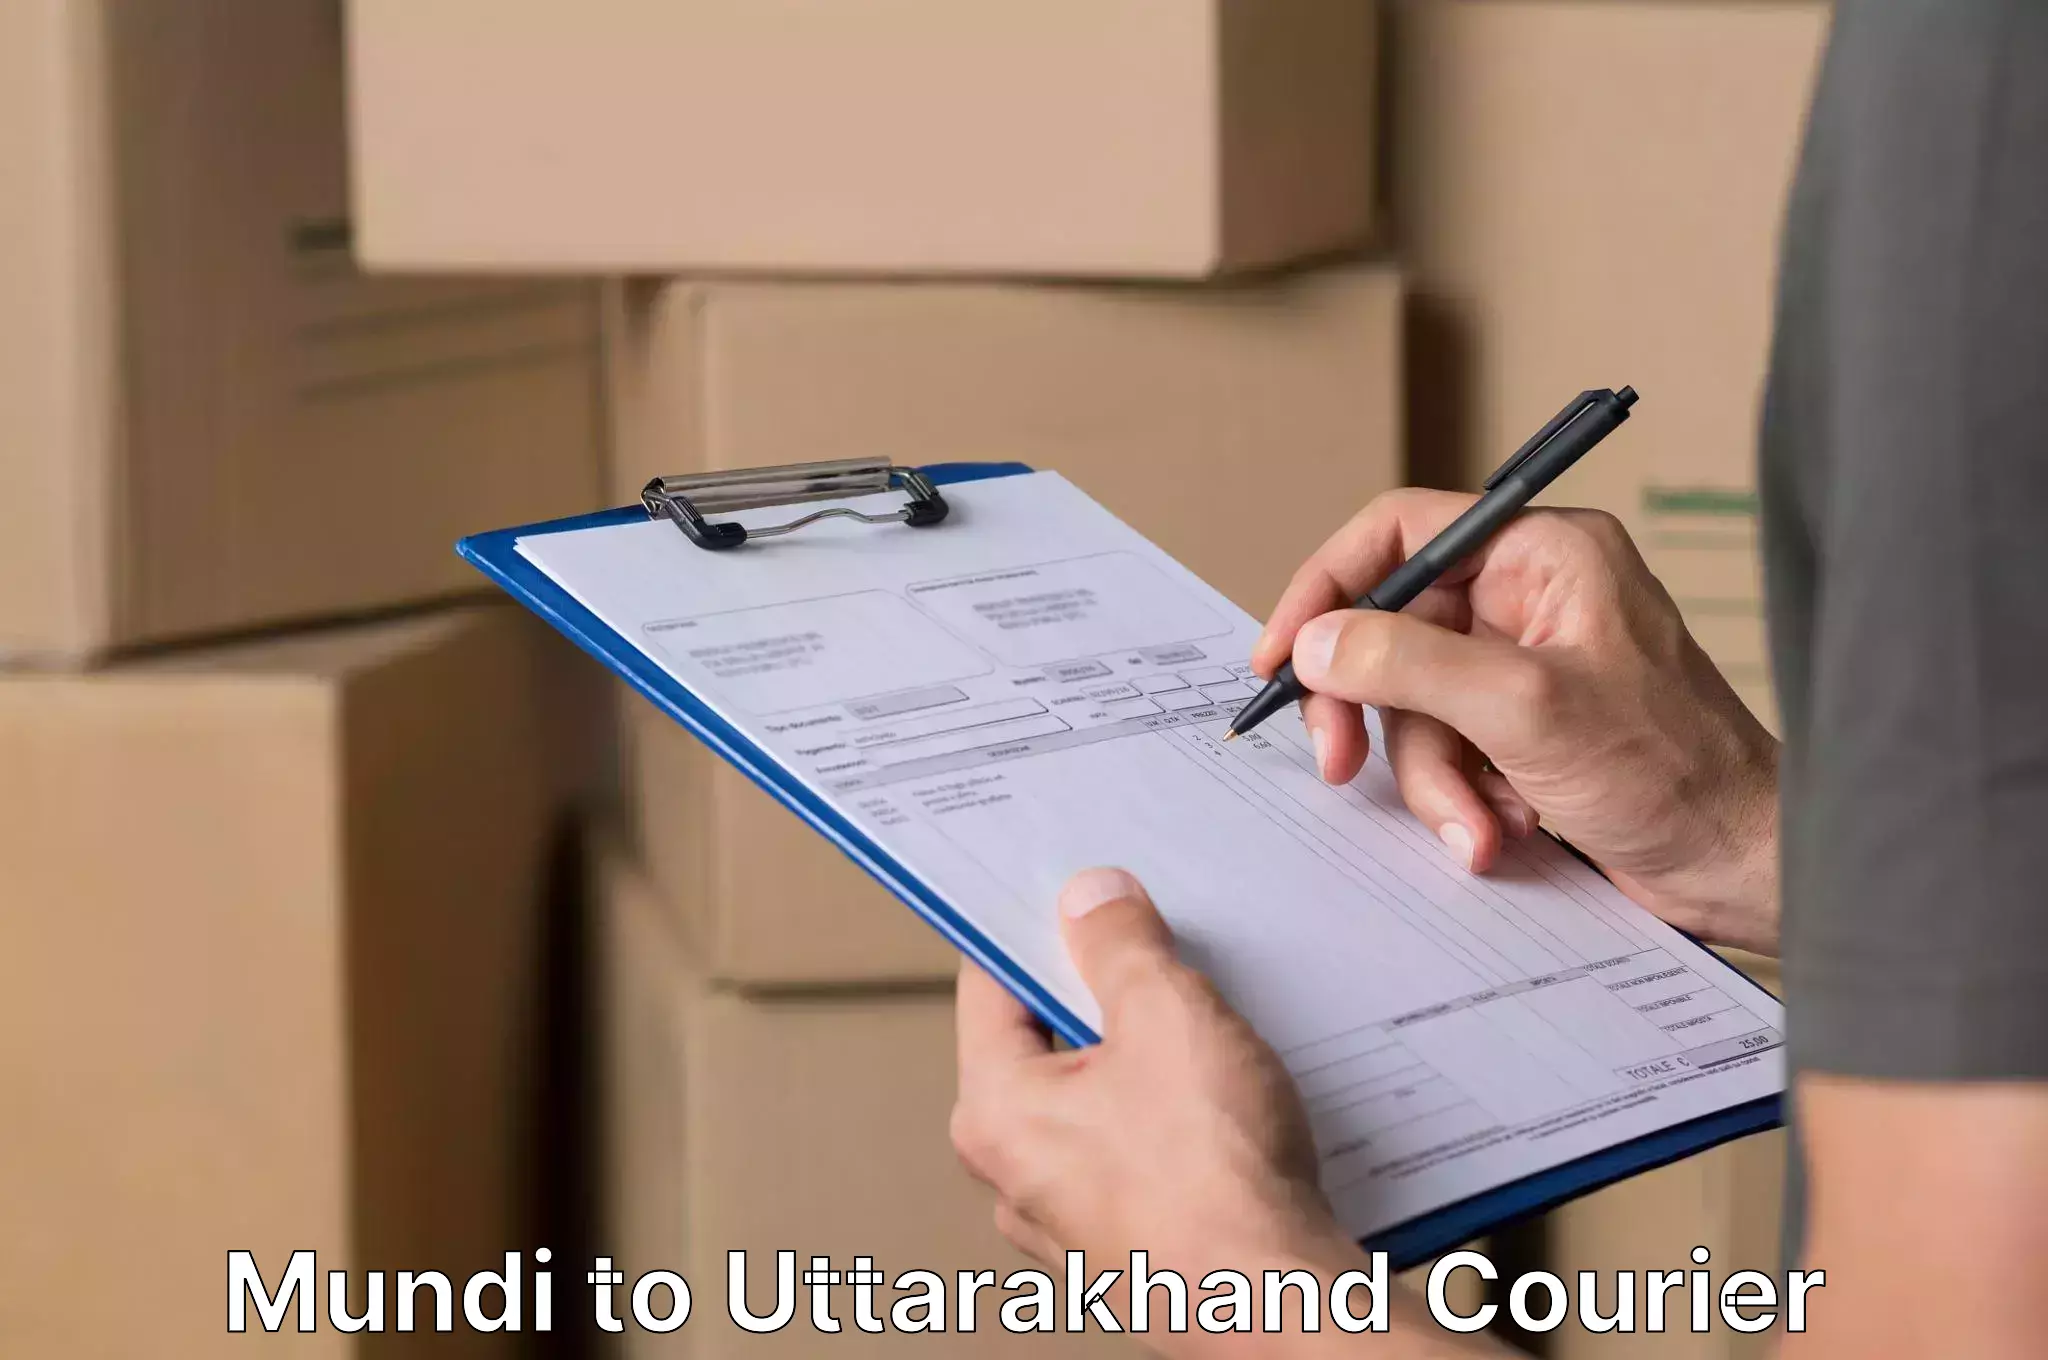 Furniture moving specialists Mundi to Uttarakhand